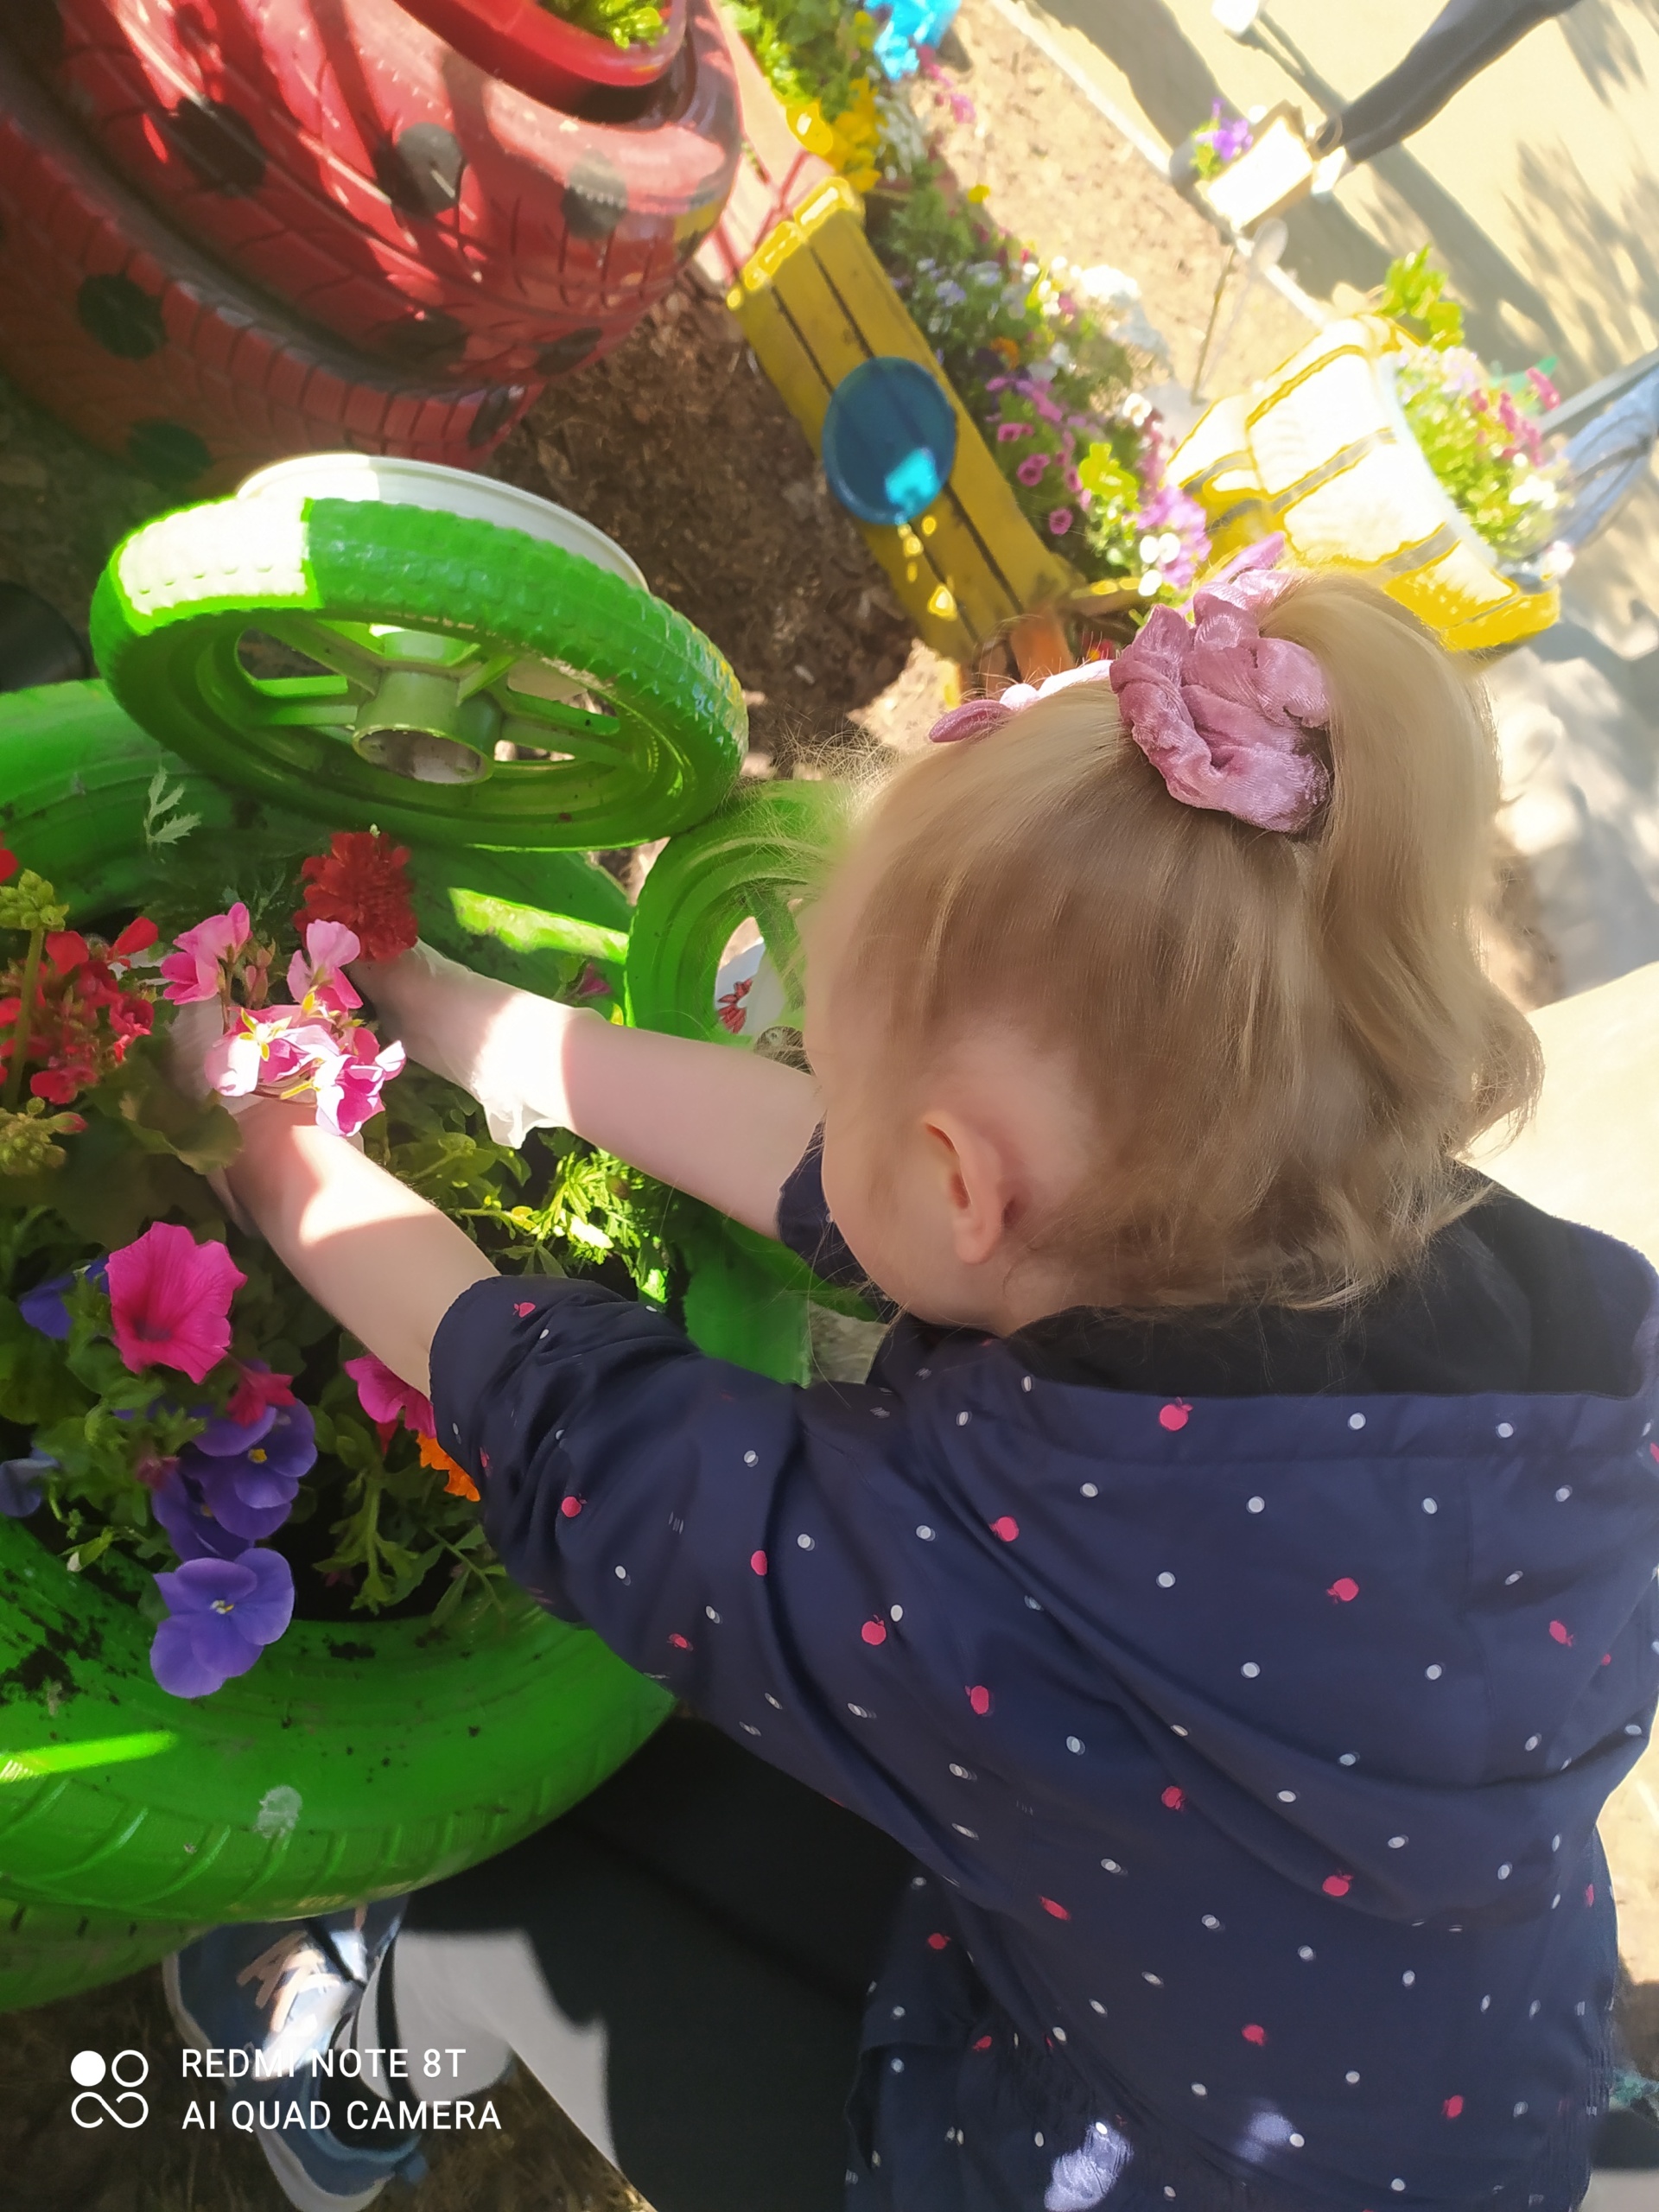 Dzieci sadzą kolorowe kwiaty w skrzynkach.